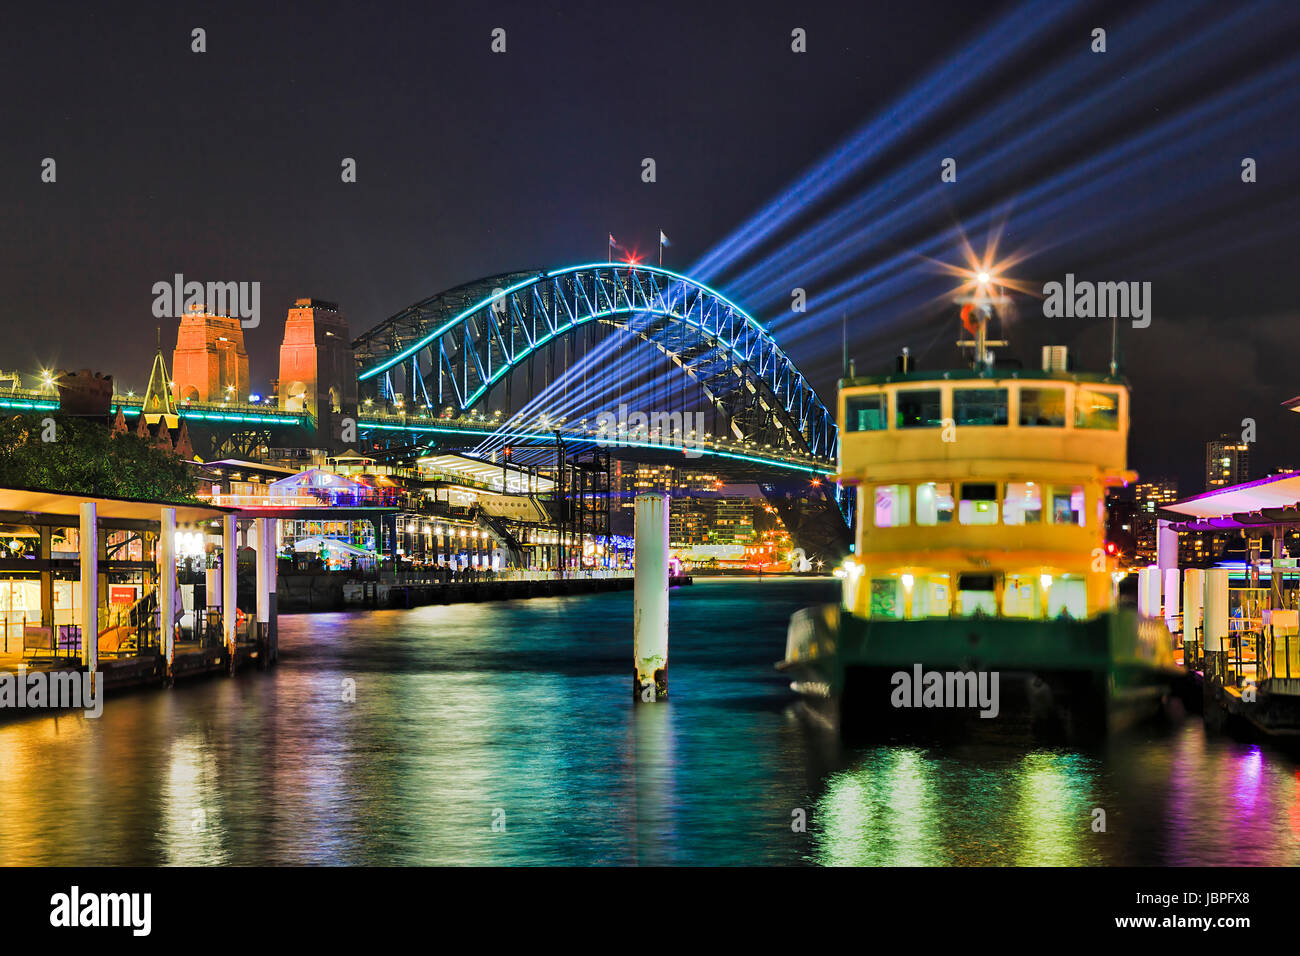 Il Circular Quay ferries pontili verso oltremare terminal passeggeri nelle rocce di Sydney e il Sydney Harbour Bridge di notte durante il Vivid sydney light show. Foto Stock